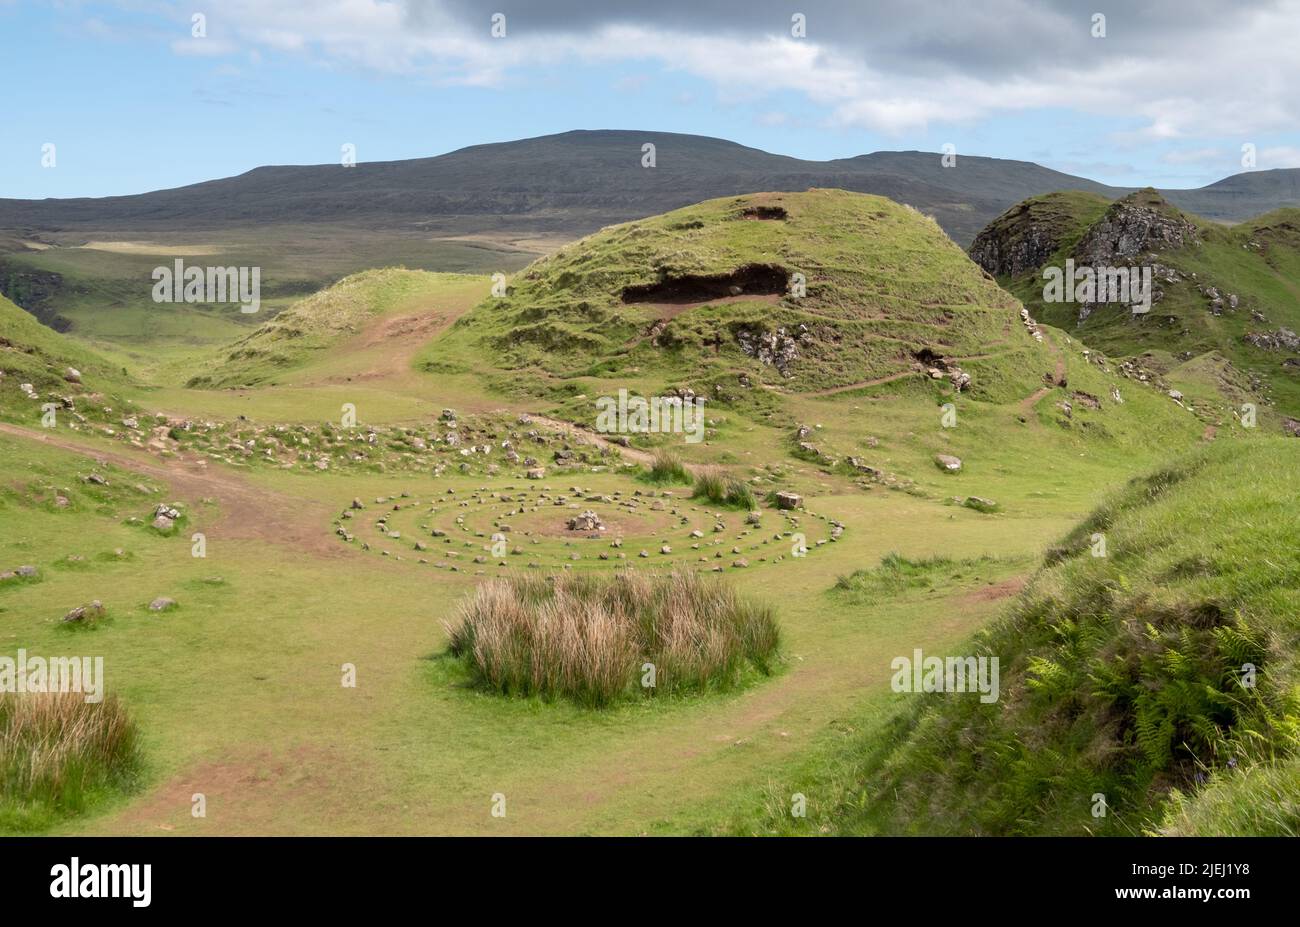 Cercle de pierres créé par les touristes à Fairy Glen sur la péninsule Trotternish, île d'Uig de Skye, Écosse Royaume-Uni. Banque D'Images